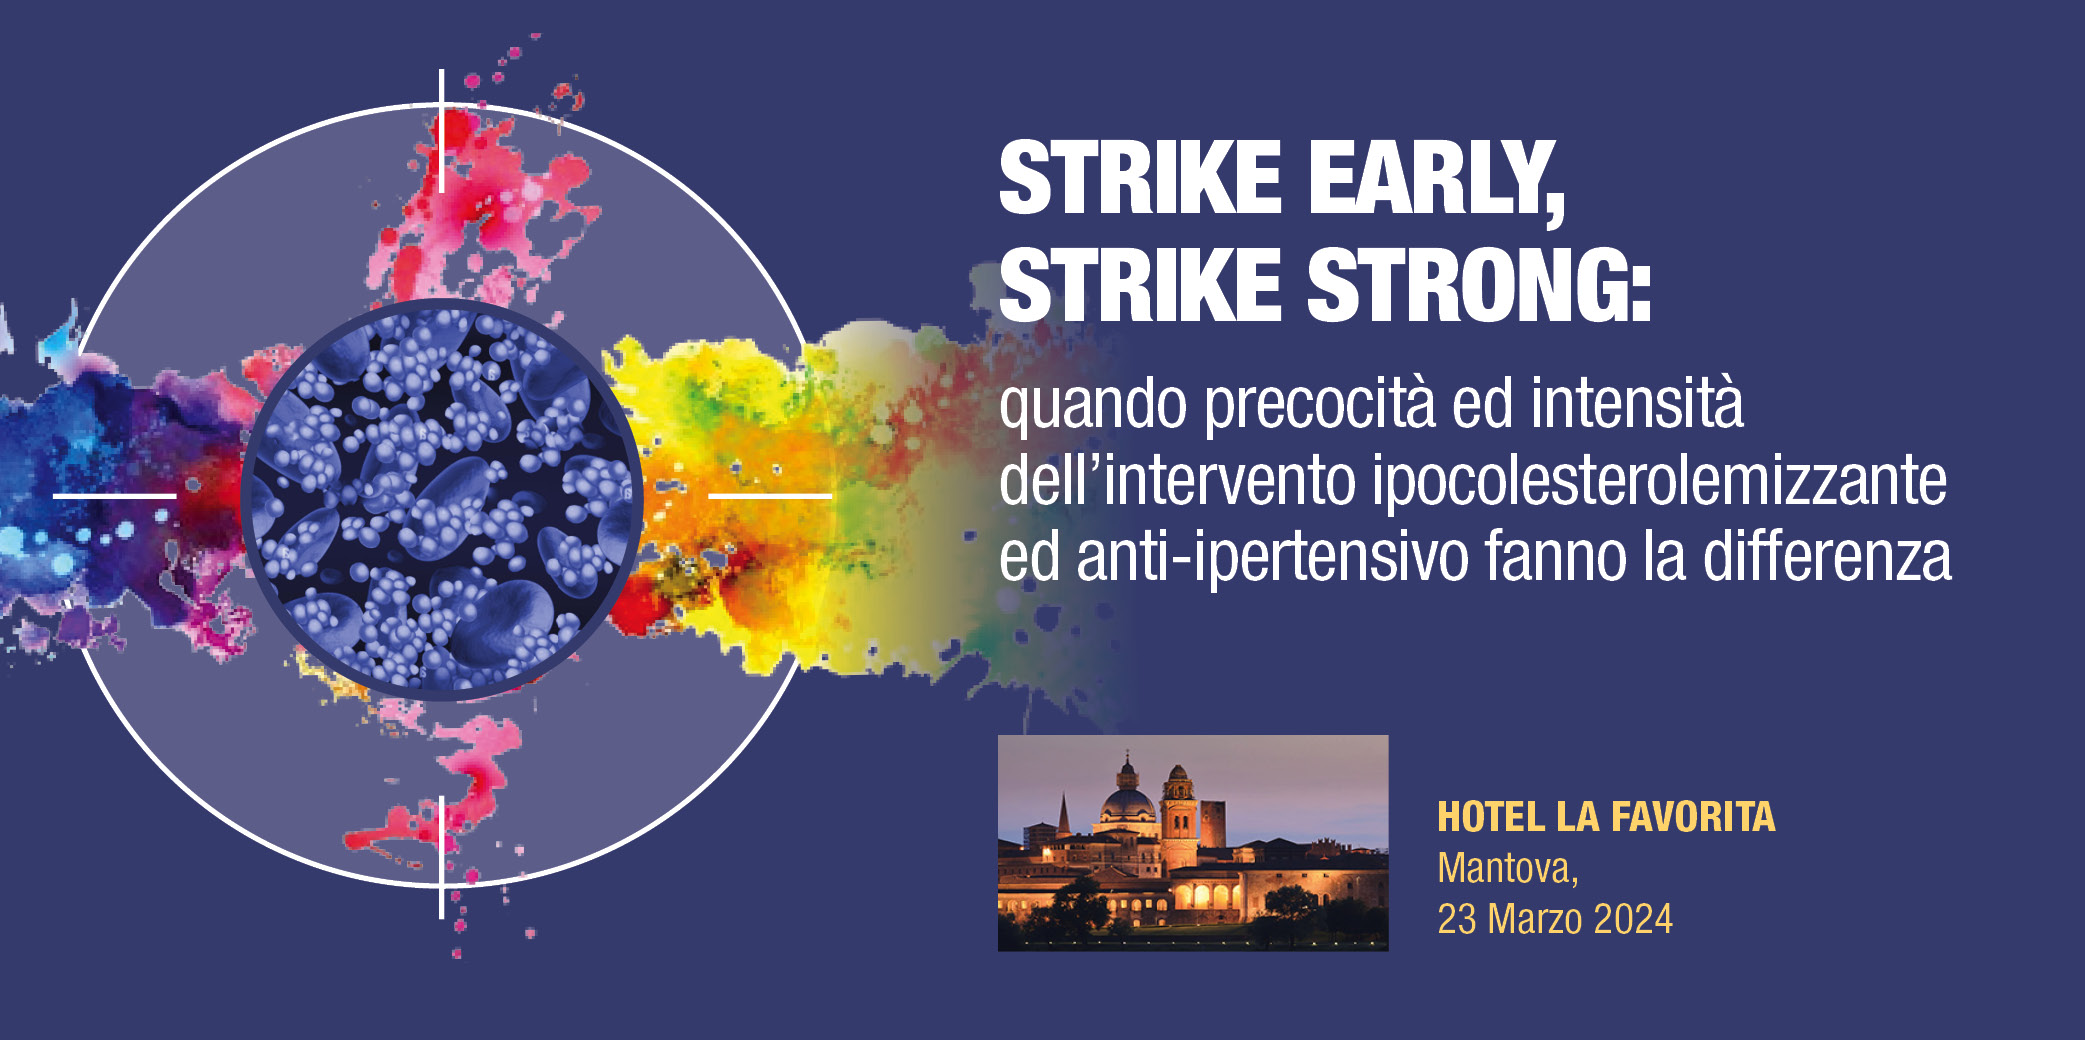 “STRIKE EARLY, STRIKE STRONG: Quando precocità ed intensità dell’Intervento ipocolesterolemizzante fanno la differenza” Mantova, 23 Marzo 2024